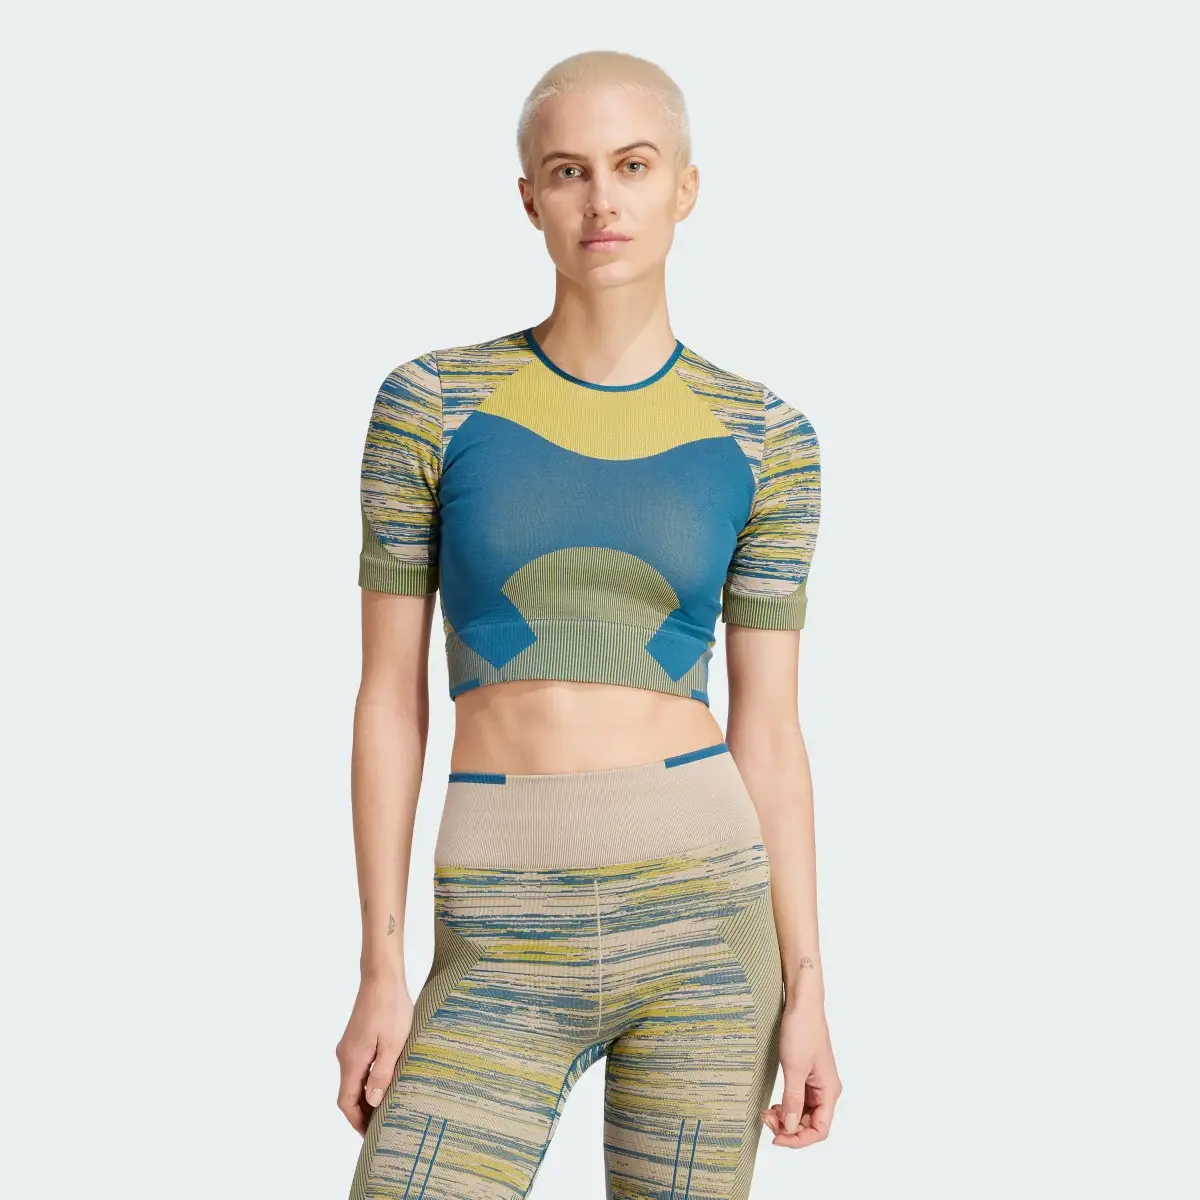 Adidas Camiseta corta adidas by Stella McCartney TrueStrength Yoga. 2